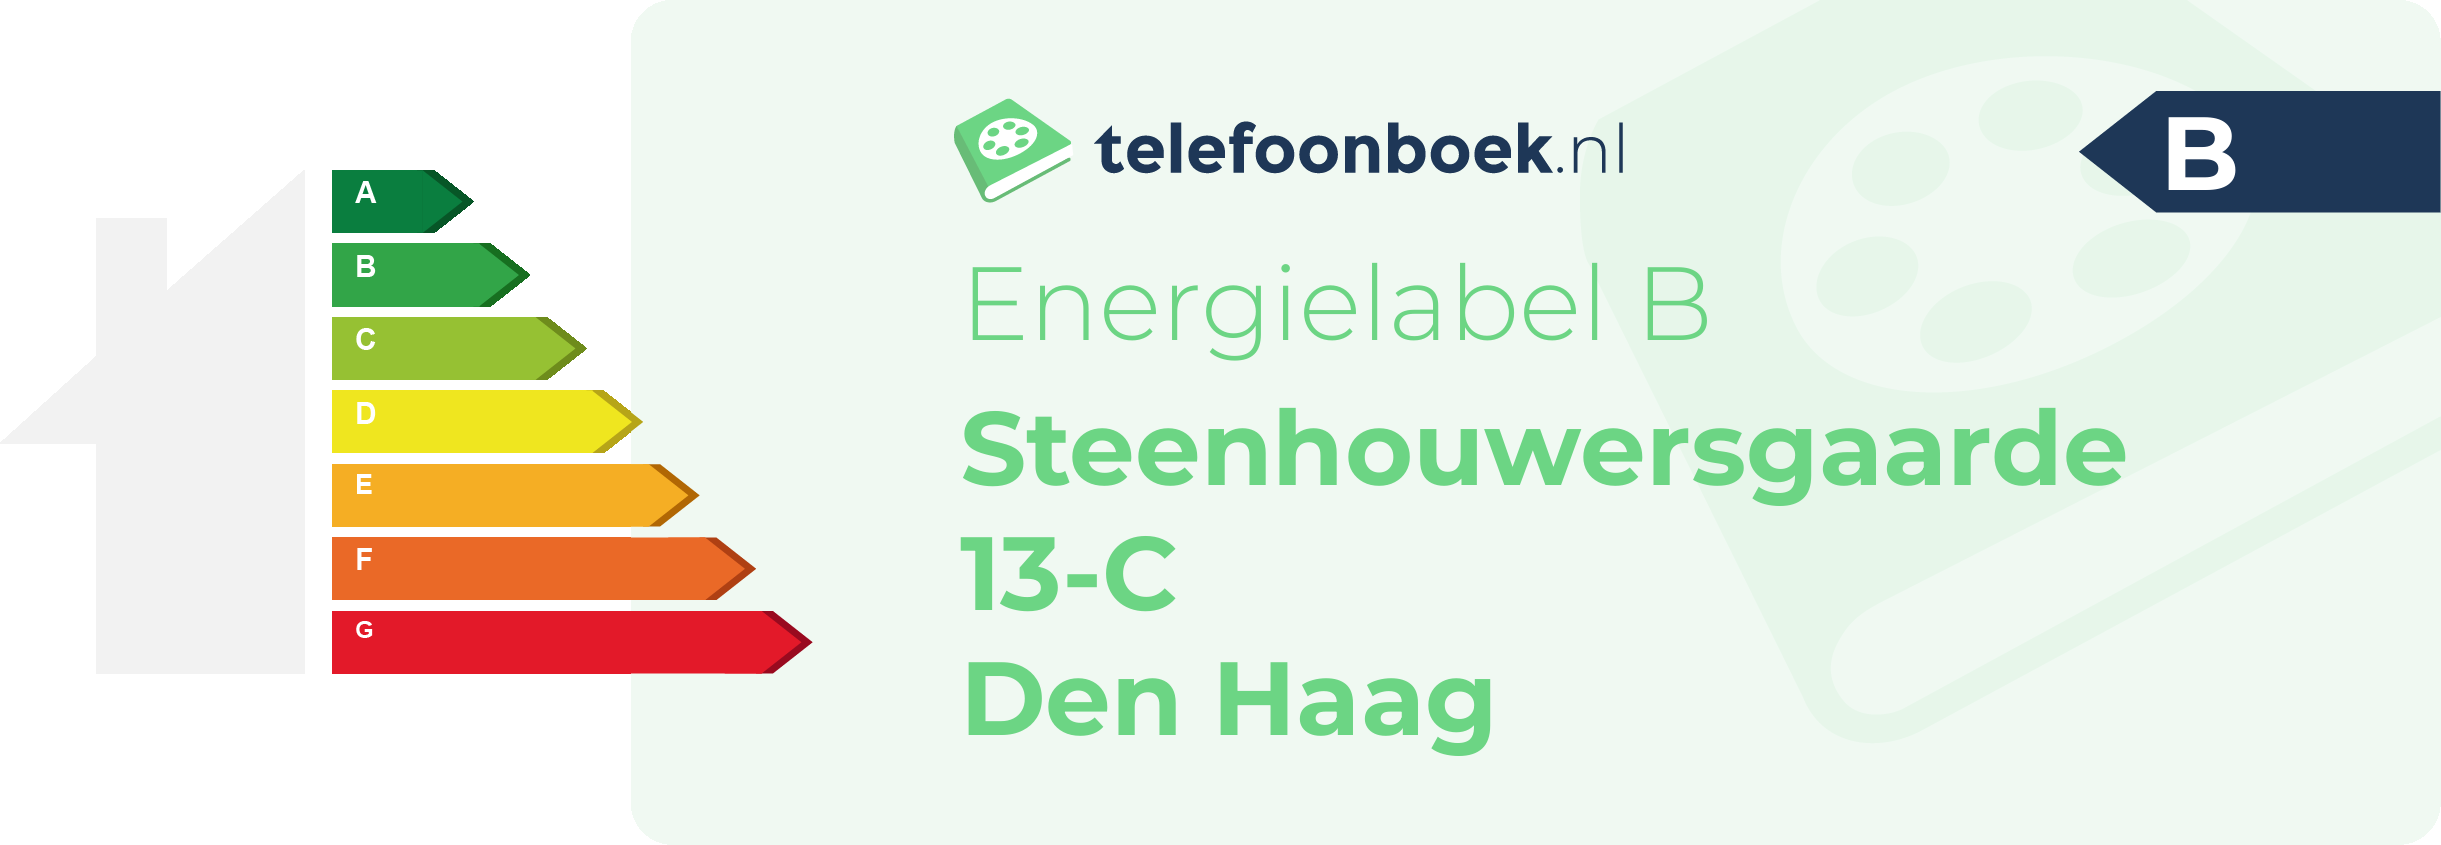 Energielabel Steenhouwersgaarde 13-C Den Haag